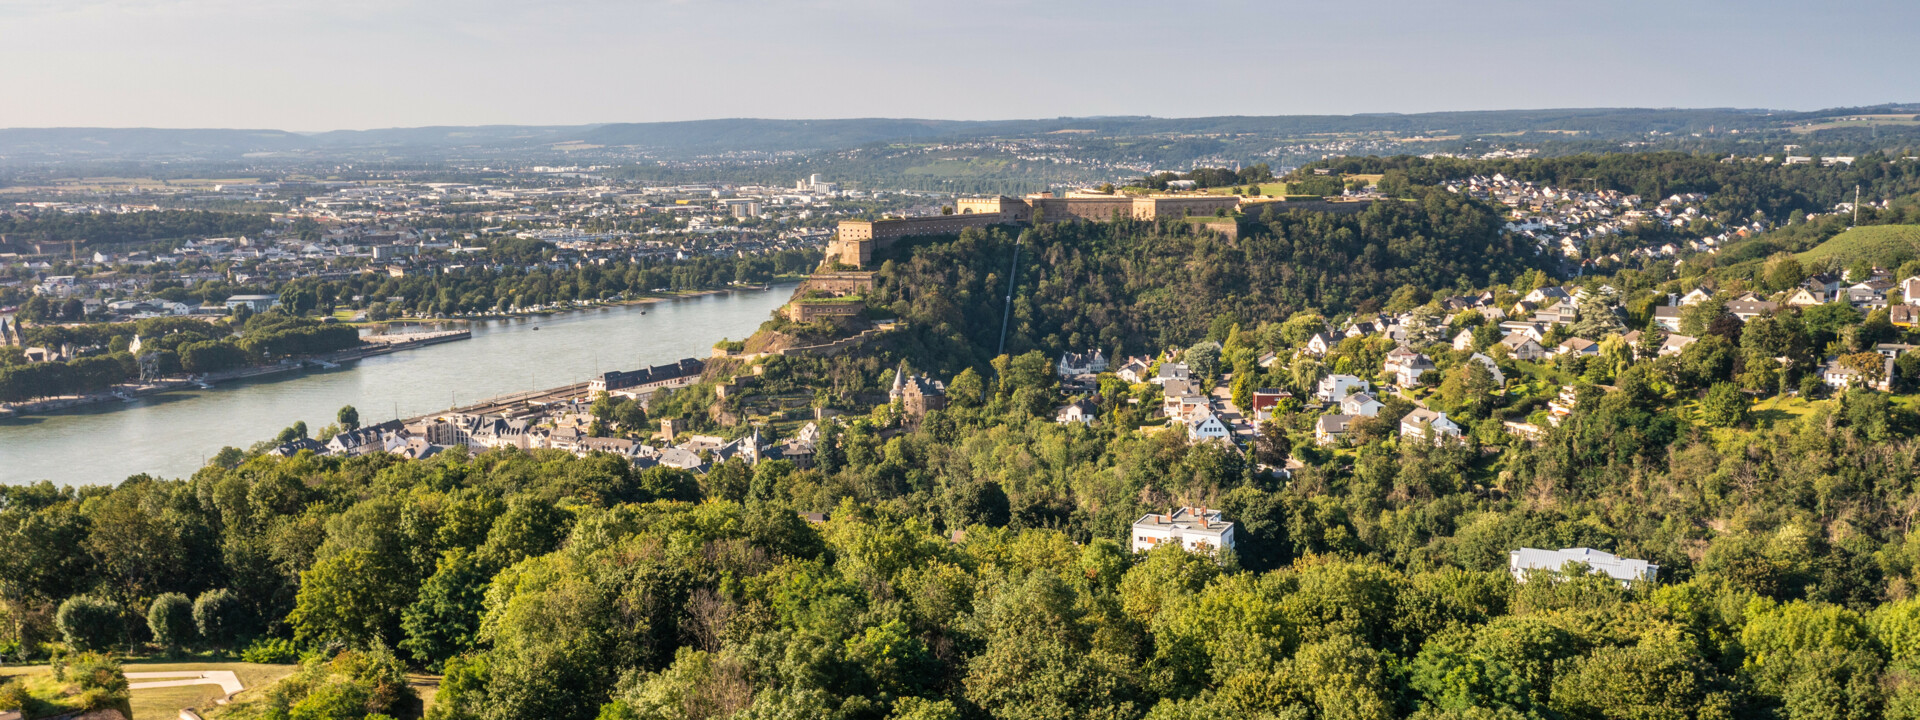 Luftaufnahme von dem Koblenzer Stadtteil Ehrenbreitstein mit der Festung, dem deutschen Eck und dem Zusammenfluss von Rhein und Mosel  ©Dominik Ketz | Rheinland-Pfalz Tourismus GmbH